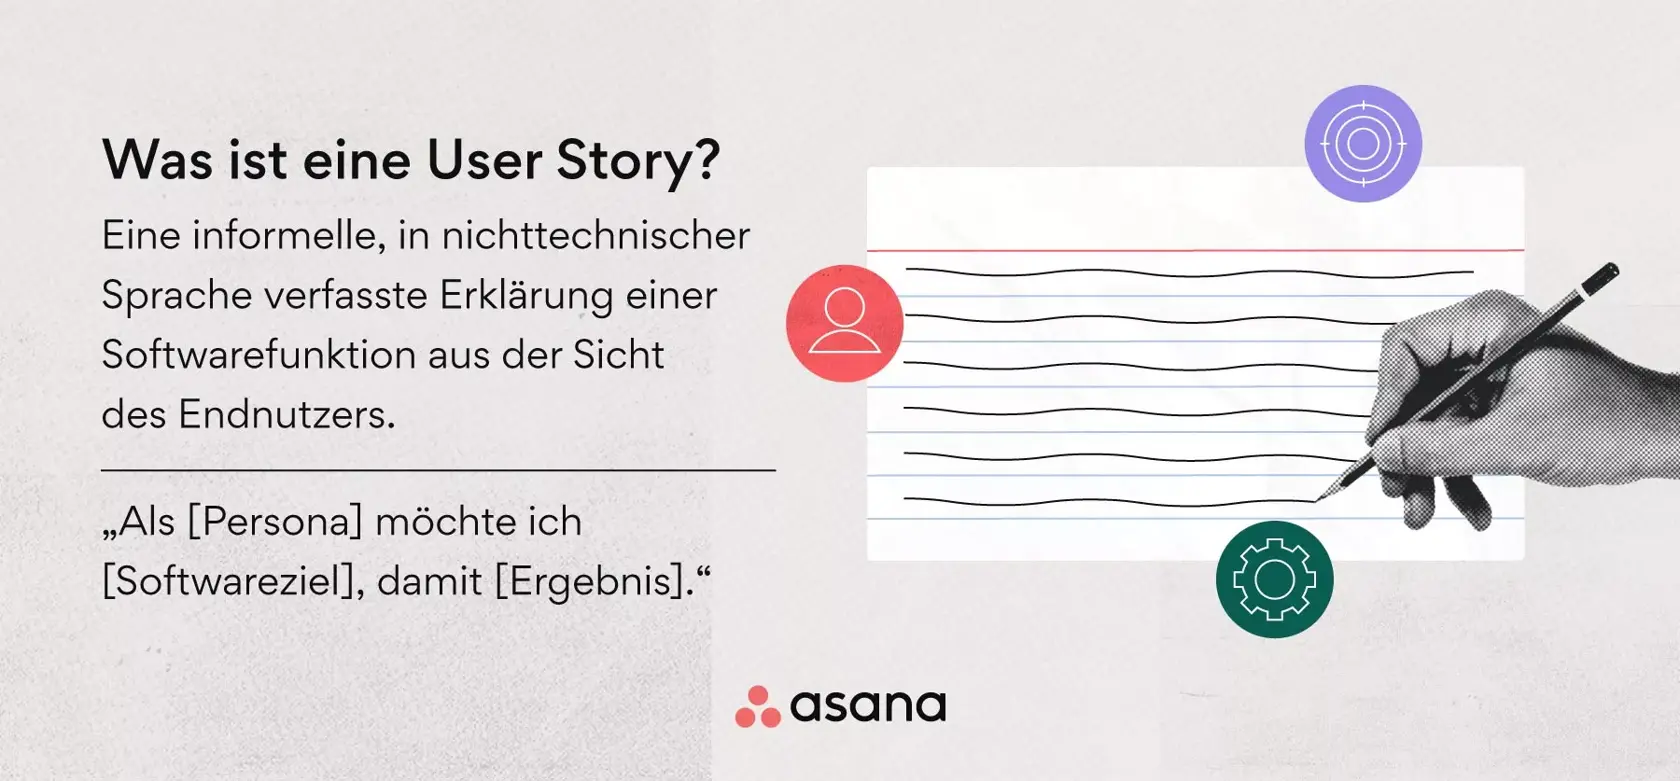 Was ist eine User Story?